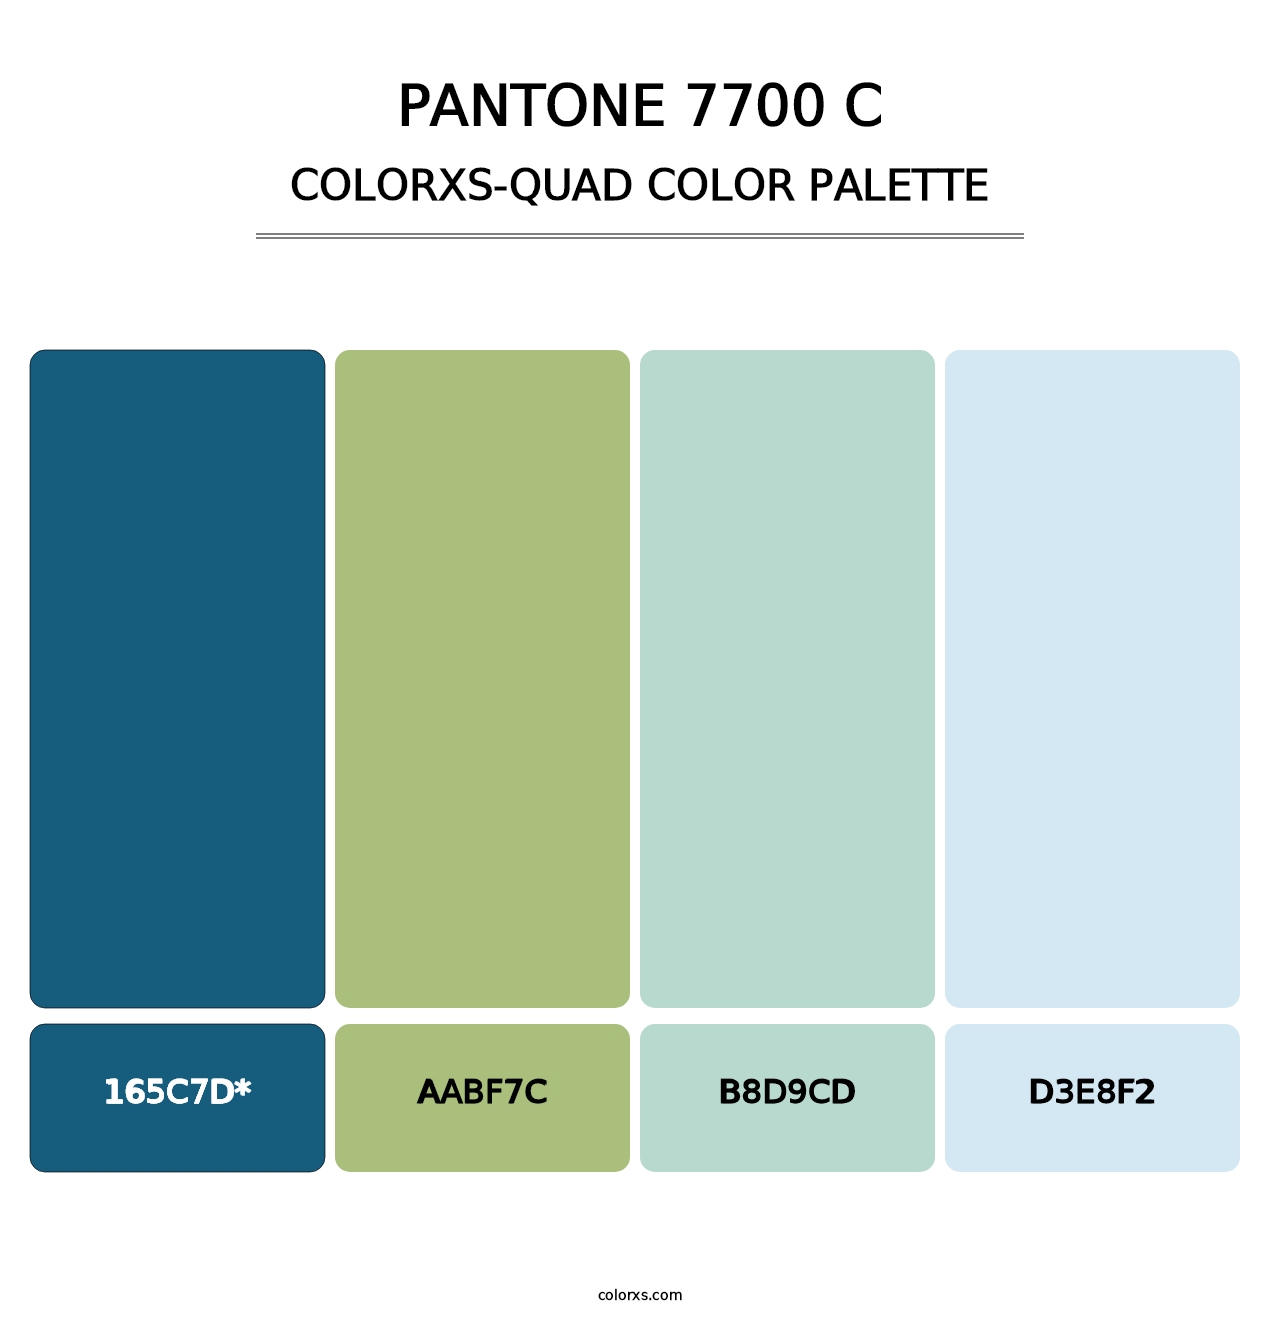 PANTONE 7700 C - Colorxs Quad Palette